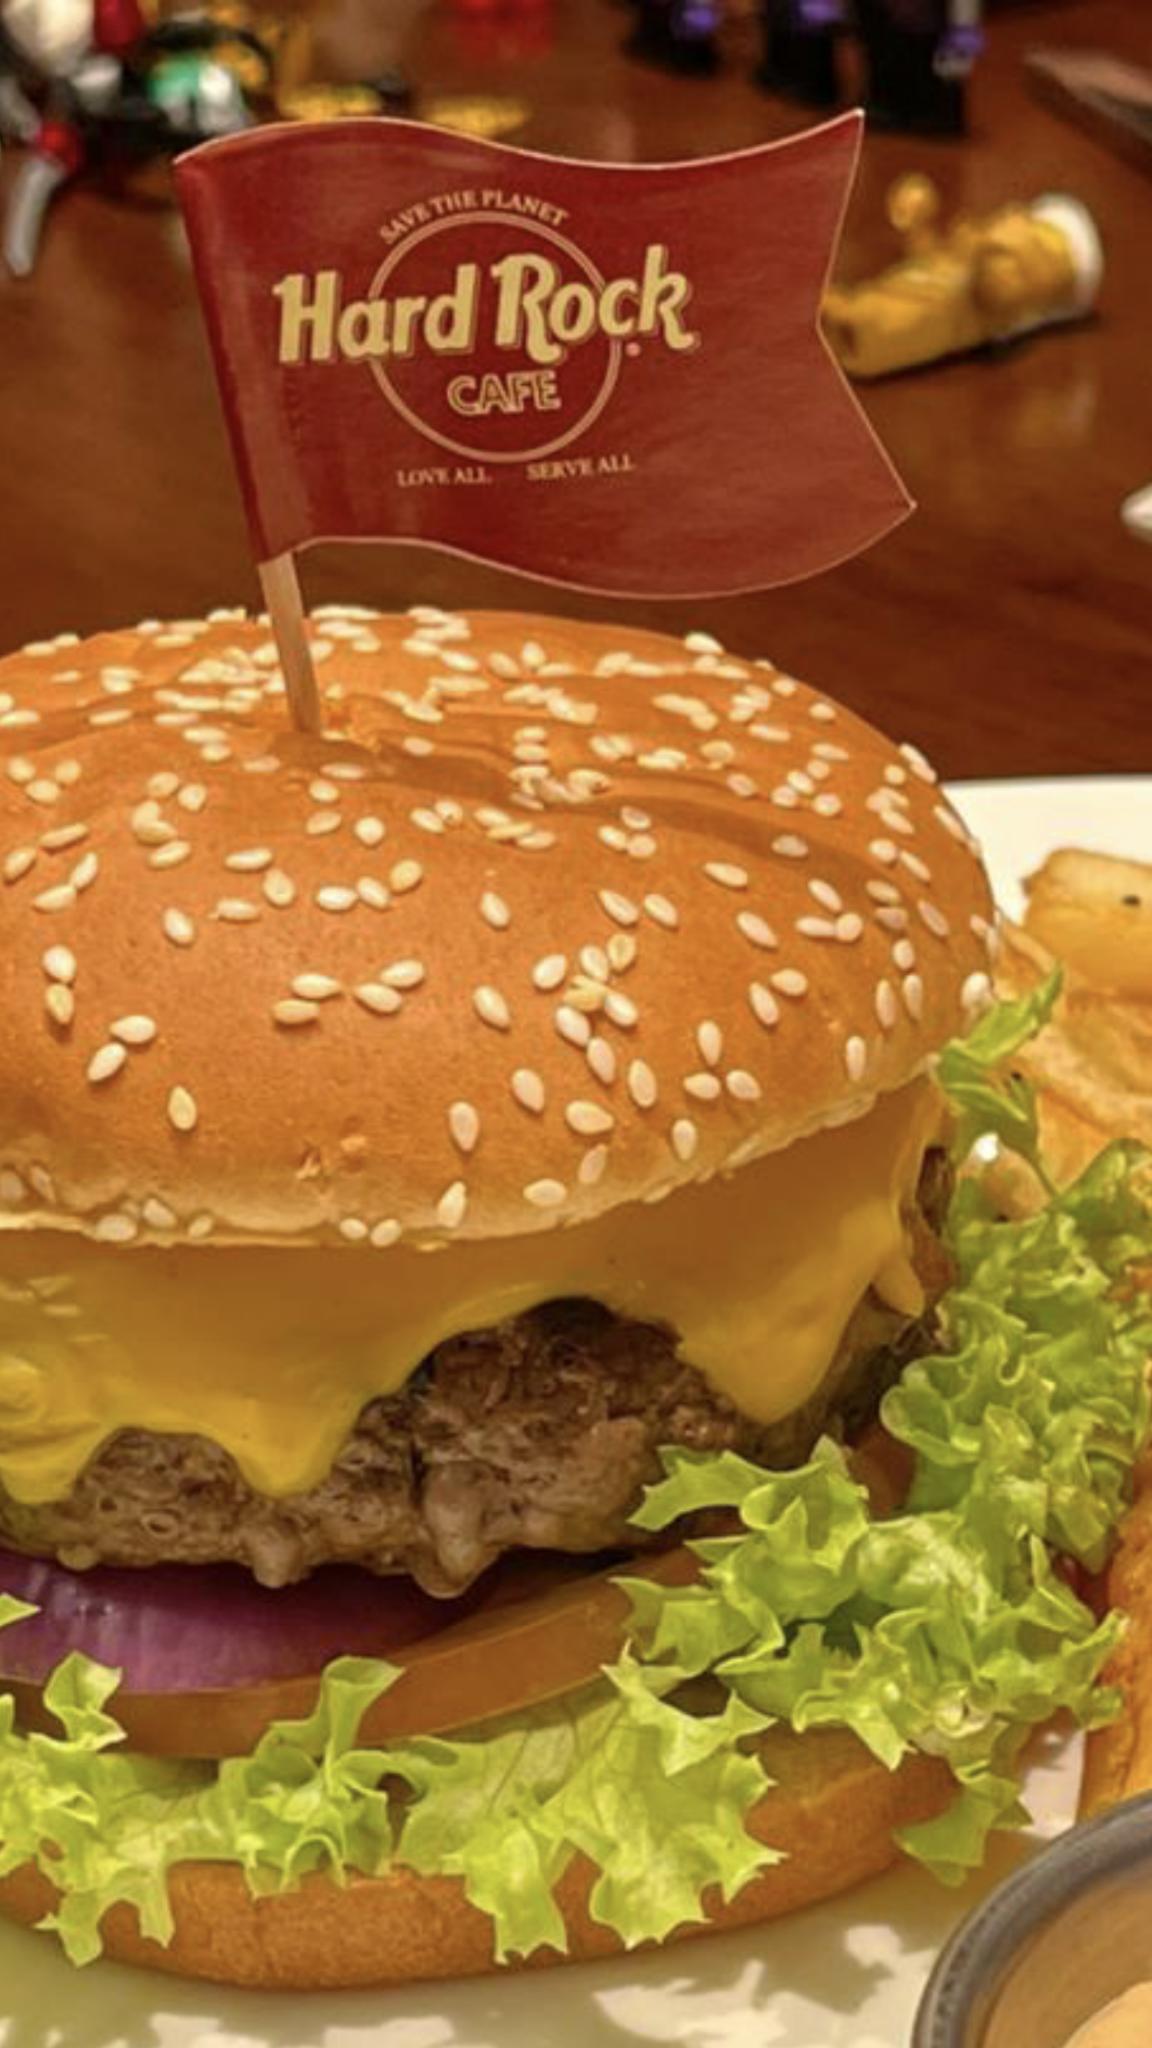 The perfect burger-a303644d-1481-4d2f-b211-eeaa5cf321ff-jpg